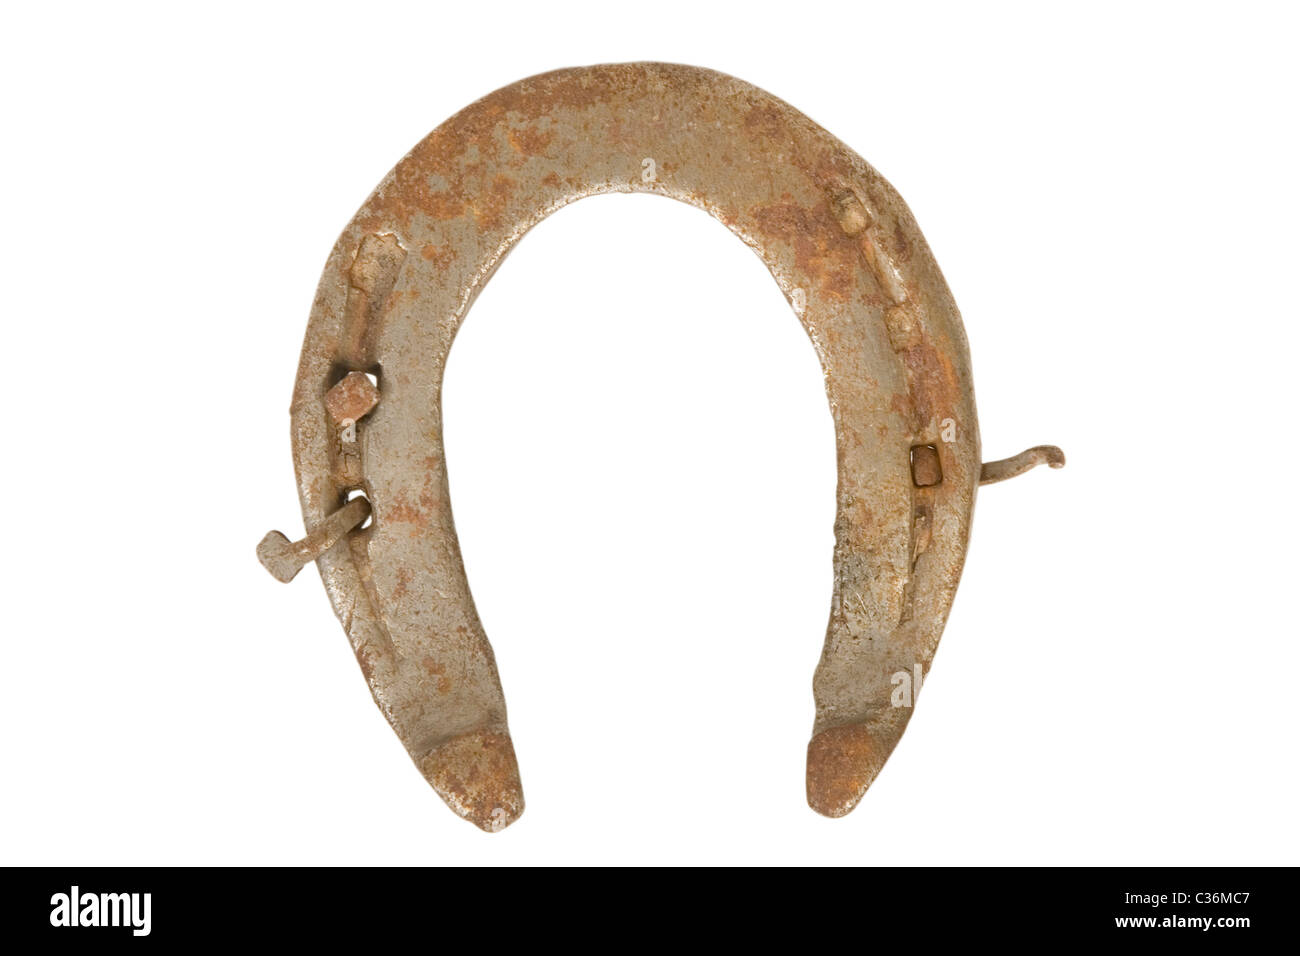 vintage horseshoe, lucky talisman symbol on white background Stock Photo